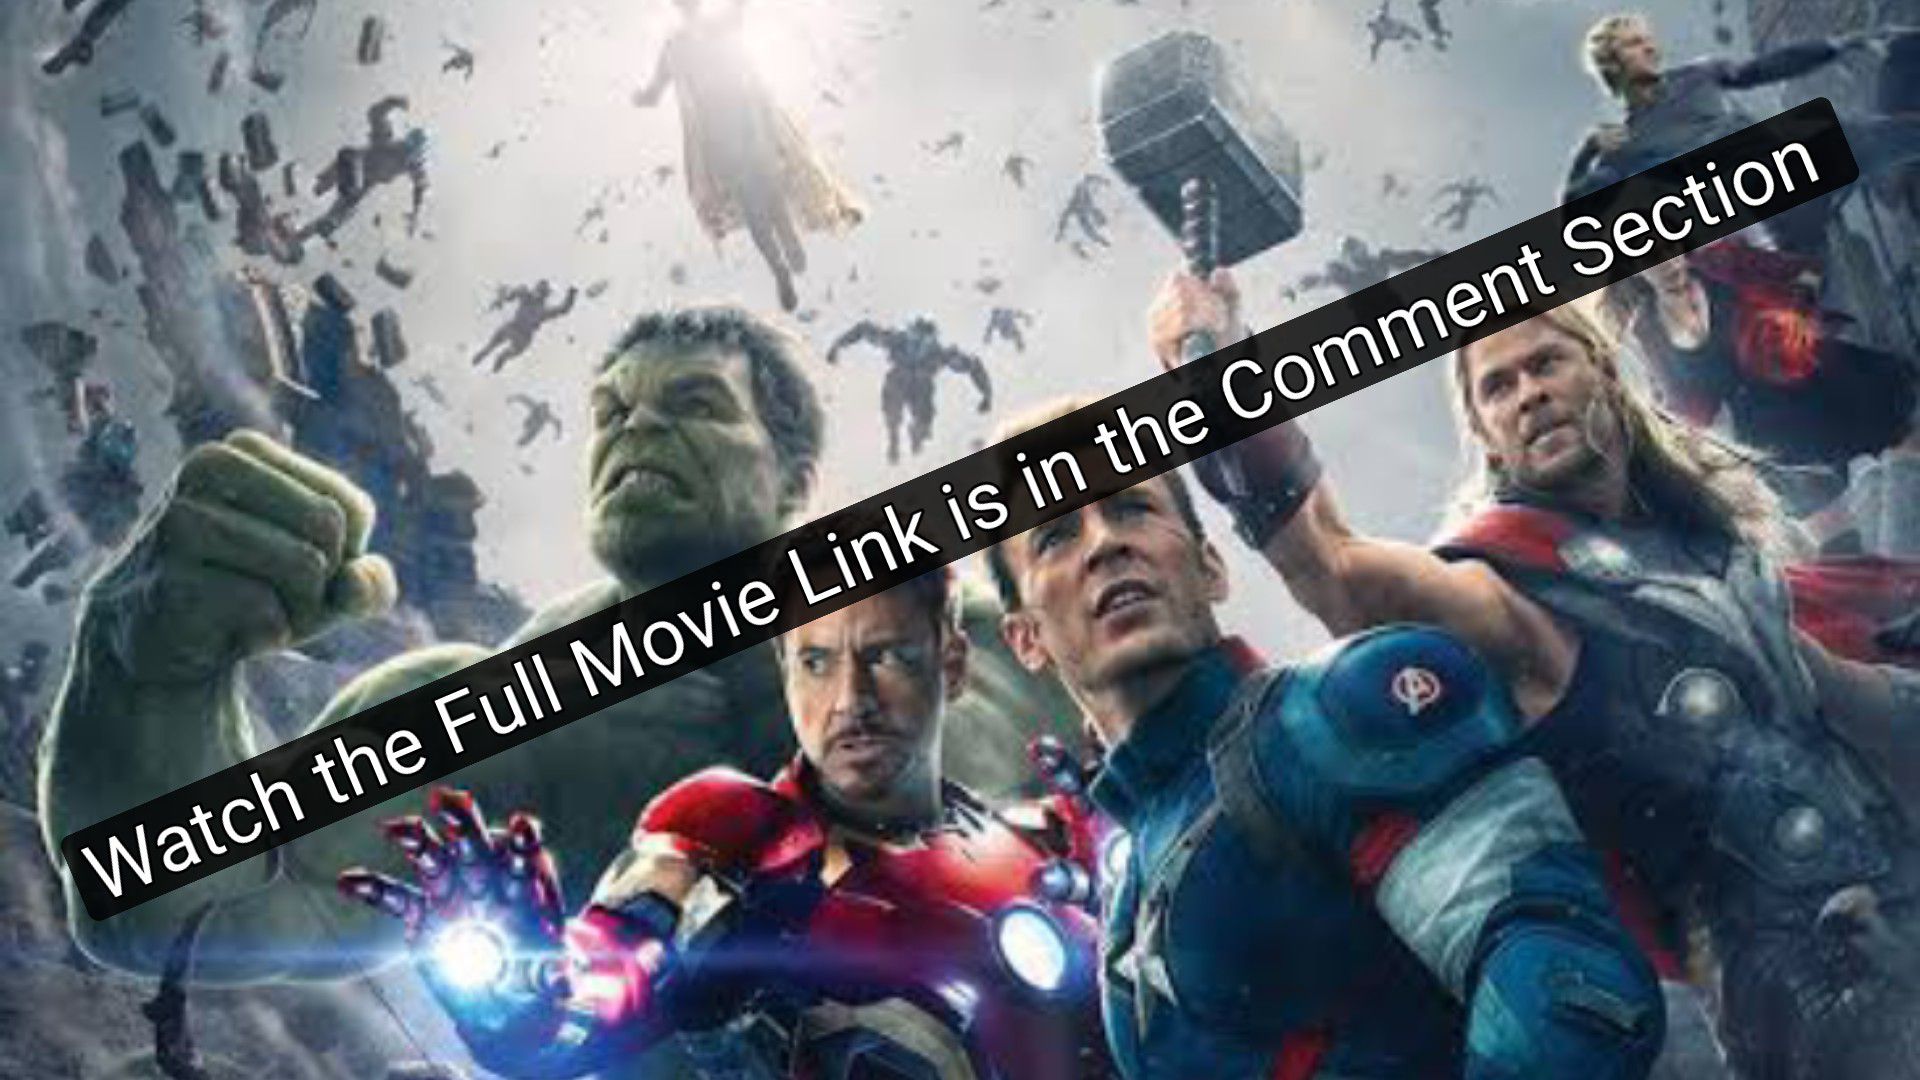 Avengers endgame full movie download telegram